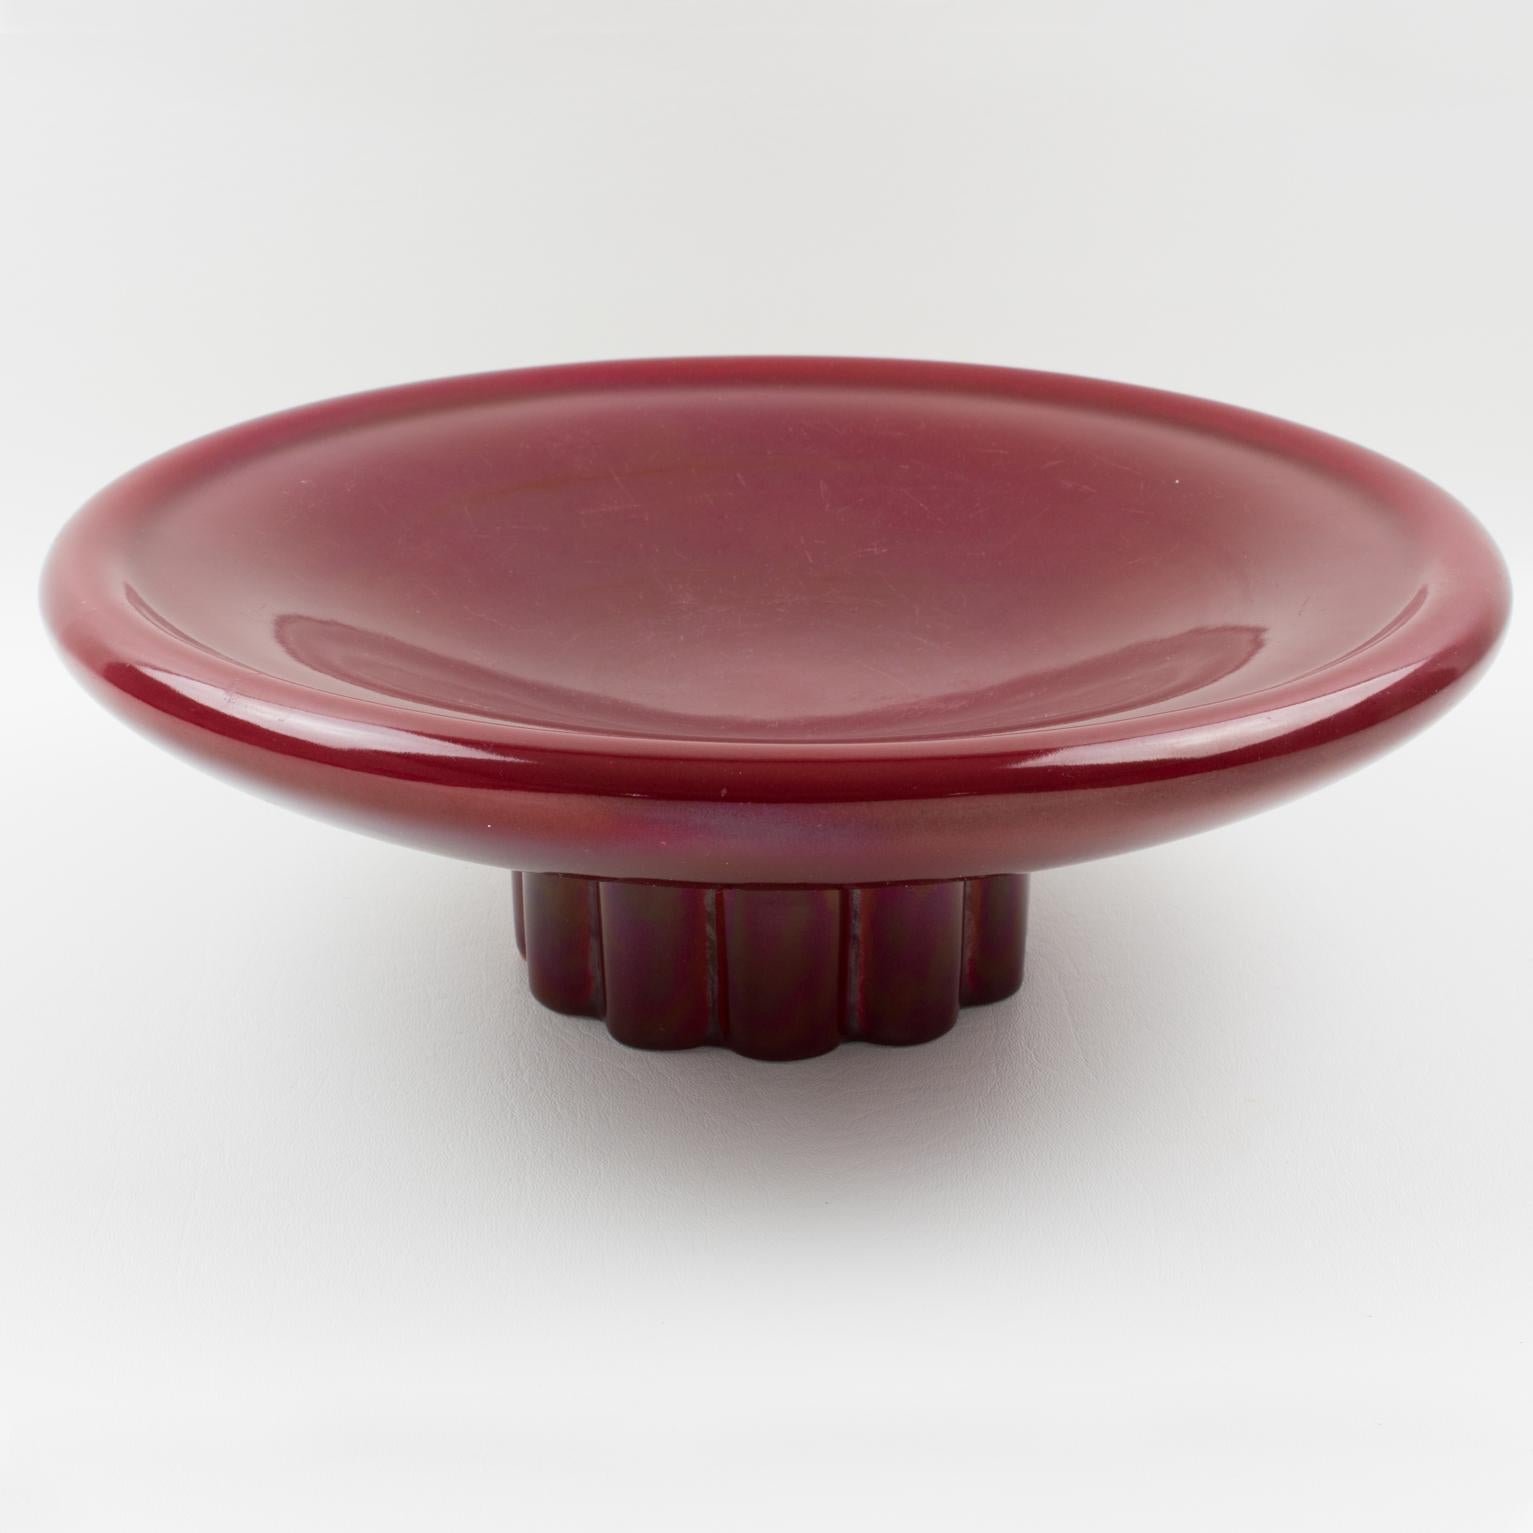 Paul Milet for Sevres Art Deco Oxblood Ceramic Bowl Centerpiece 5